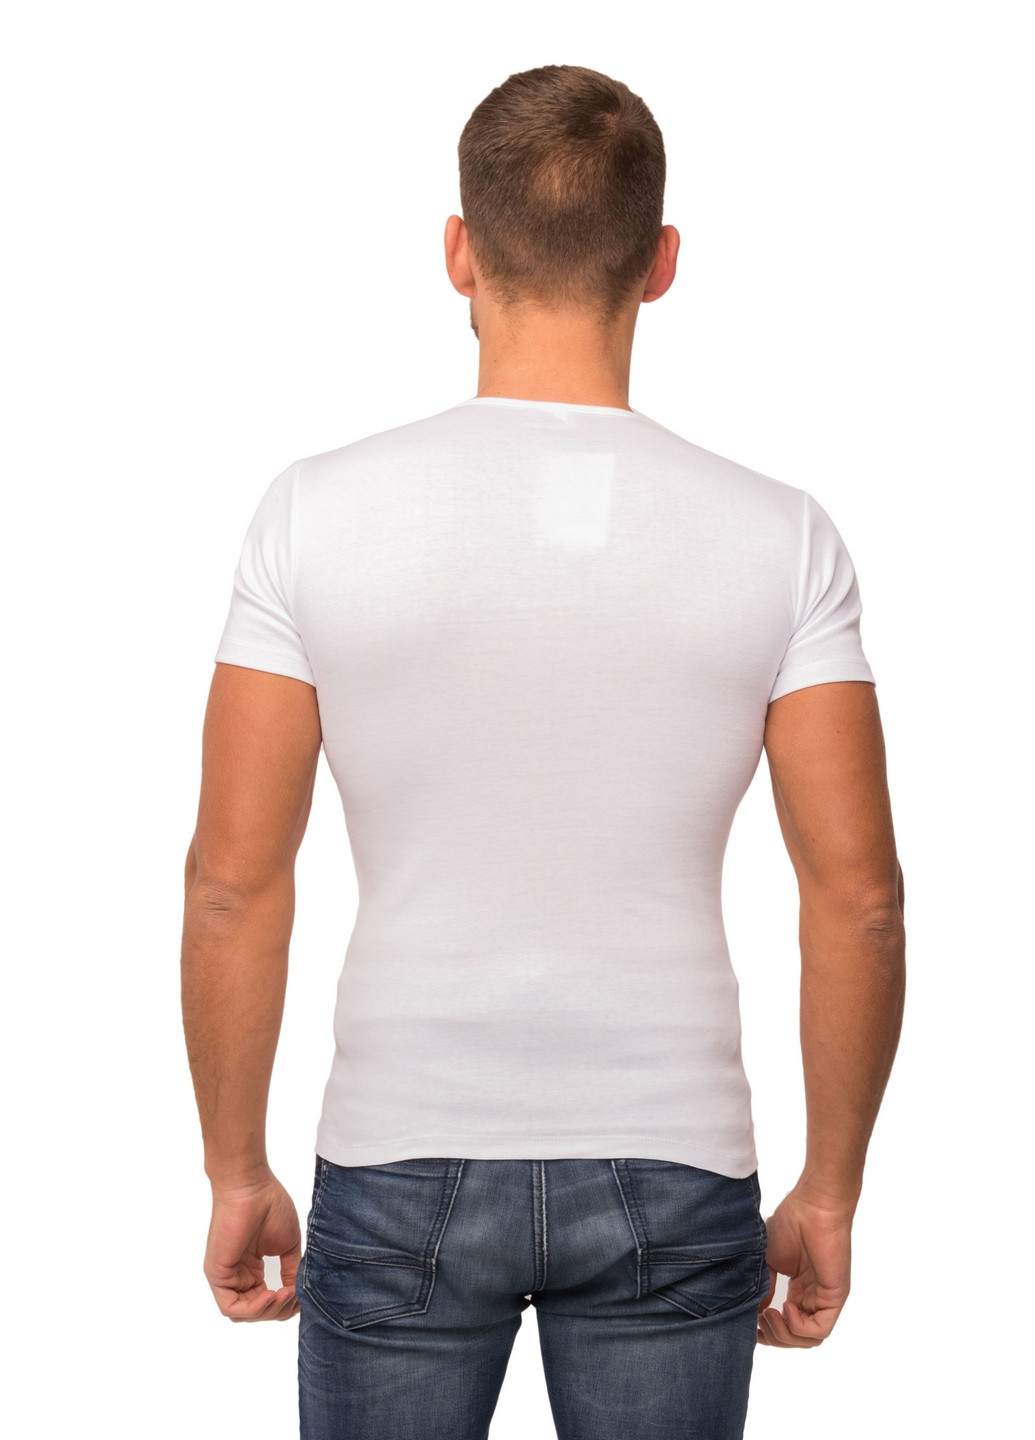 Белая футболка мужская Наталюкс 21-1303